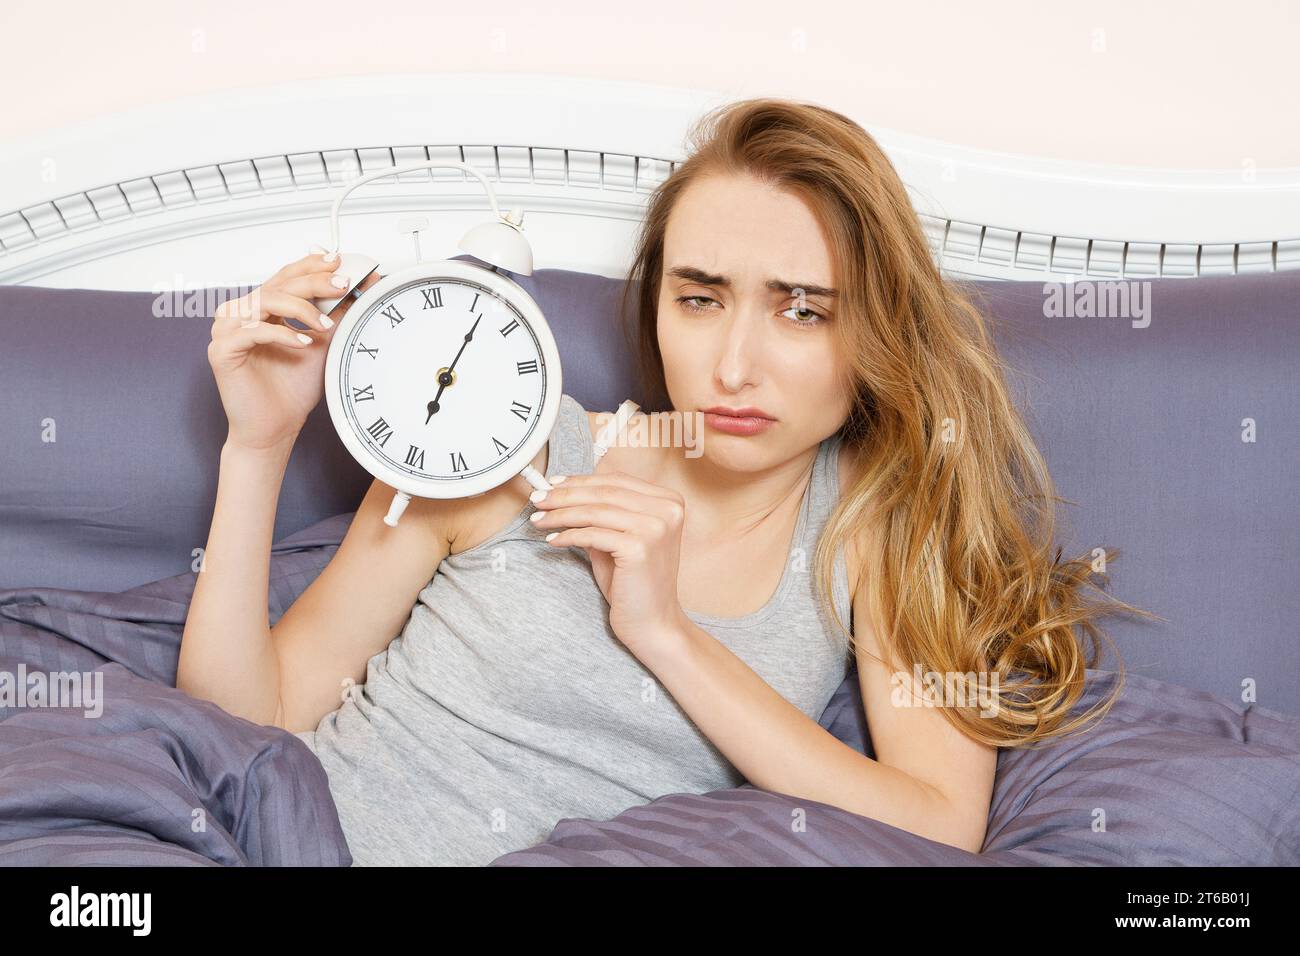 Una giovane donna scioccata che si sveglia con l'allarme, ha dormito troppo, ha dormito male insonnia. La ragazza tiene l'orologio quando è sdraiata a letto la mattina Foto Stock